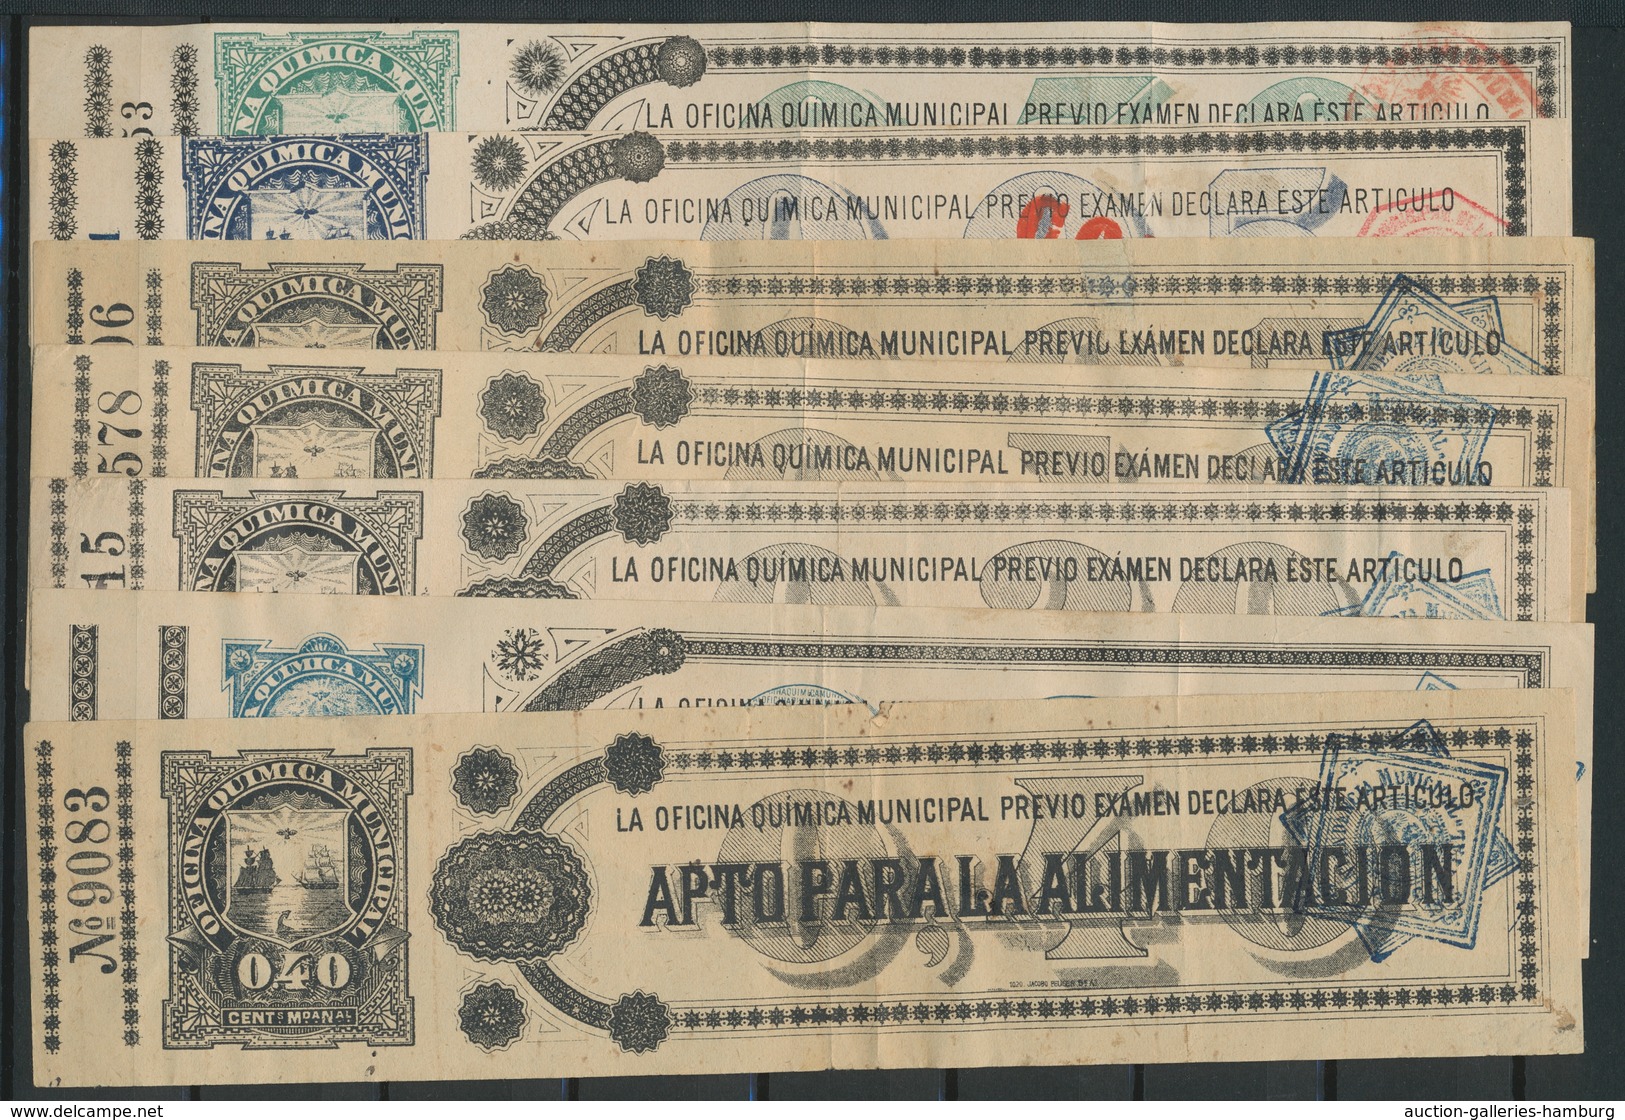 Kolumbien - Departamentos: Tolima: 1886, 5 And 10 Cents Coupon, Plus 1887-1893, Seven More Coupons I - Kolumbien